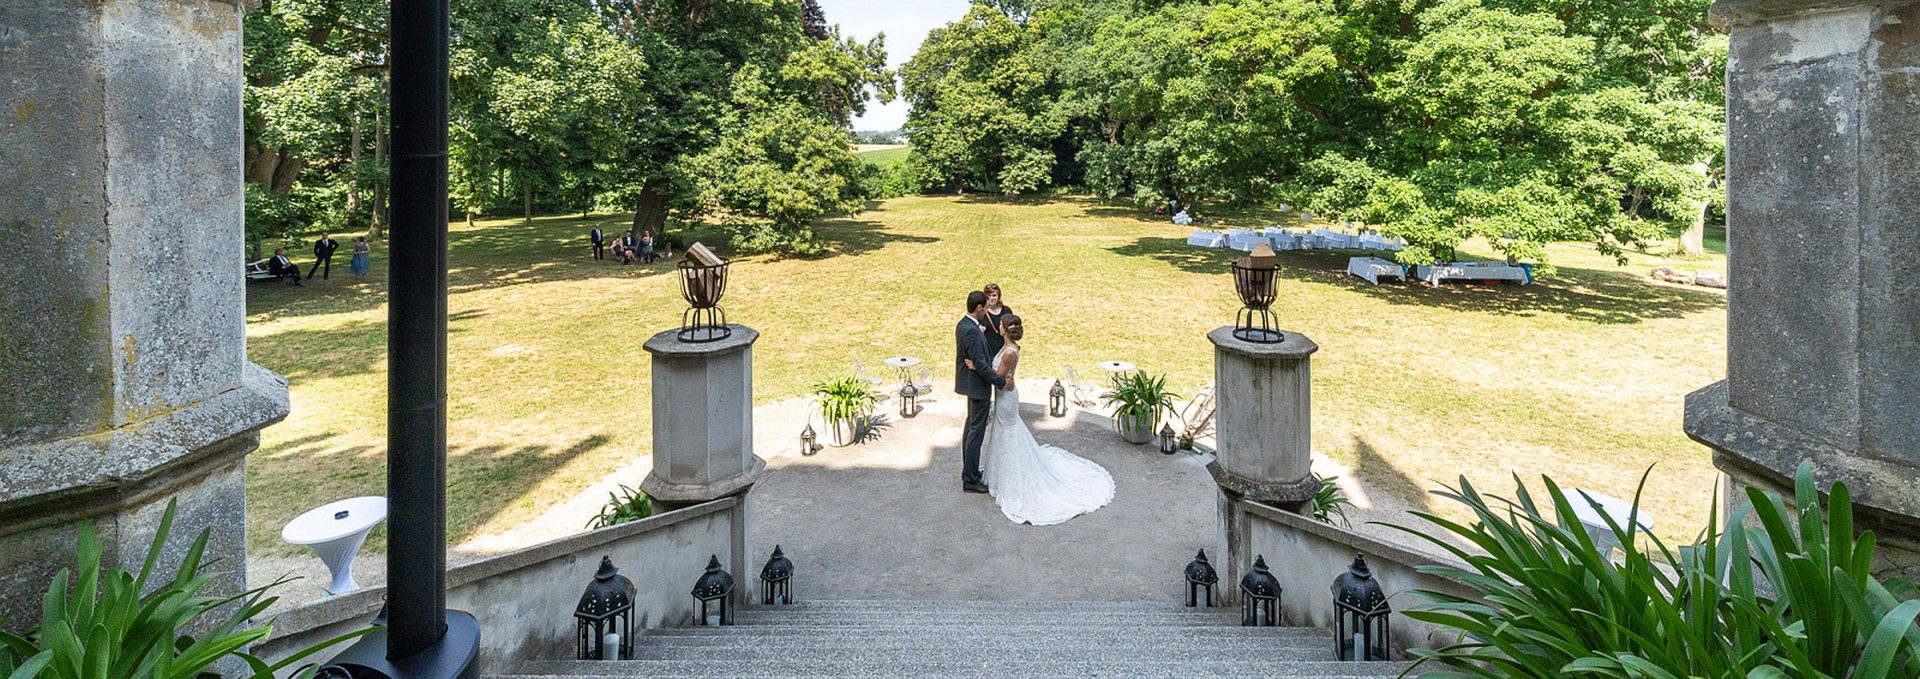 Wedding at Vogelsang Manor, © Herrenhaus Vogelsang / DOMUS Images Alexander Rudolph